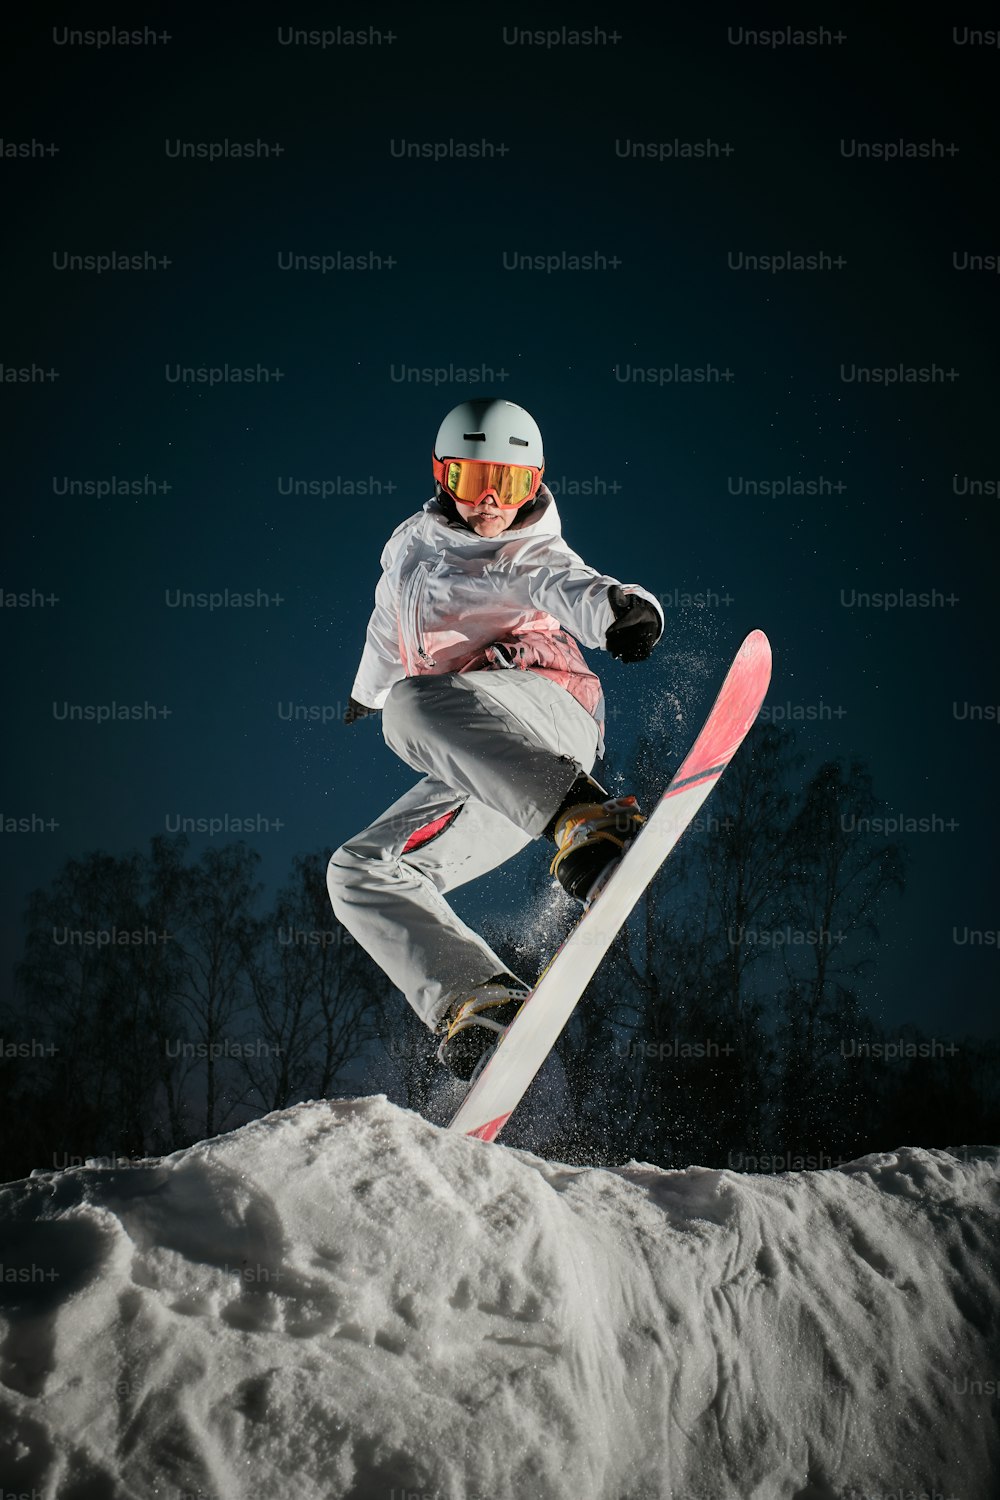 una persona en una tabla de snowboard saltando en el aire